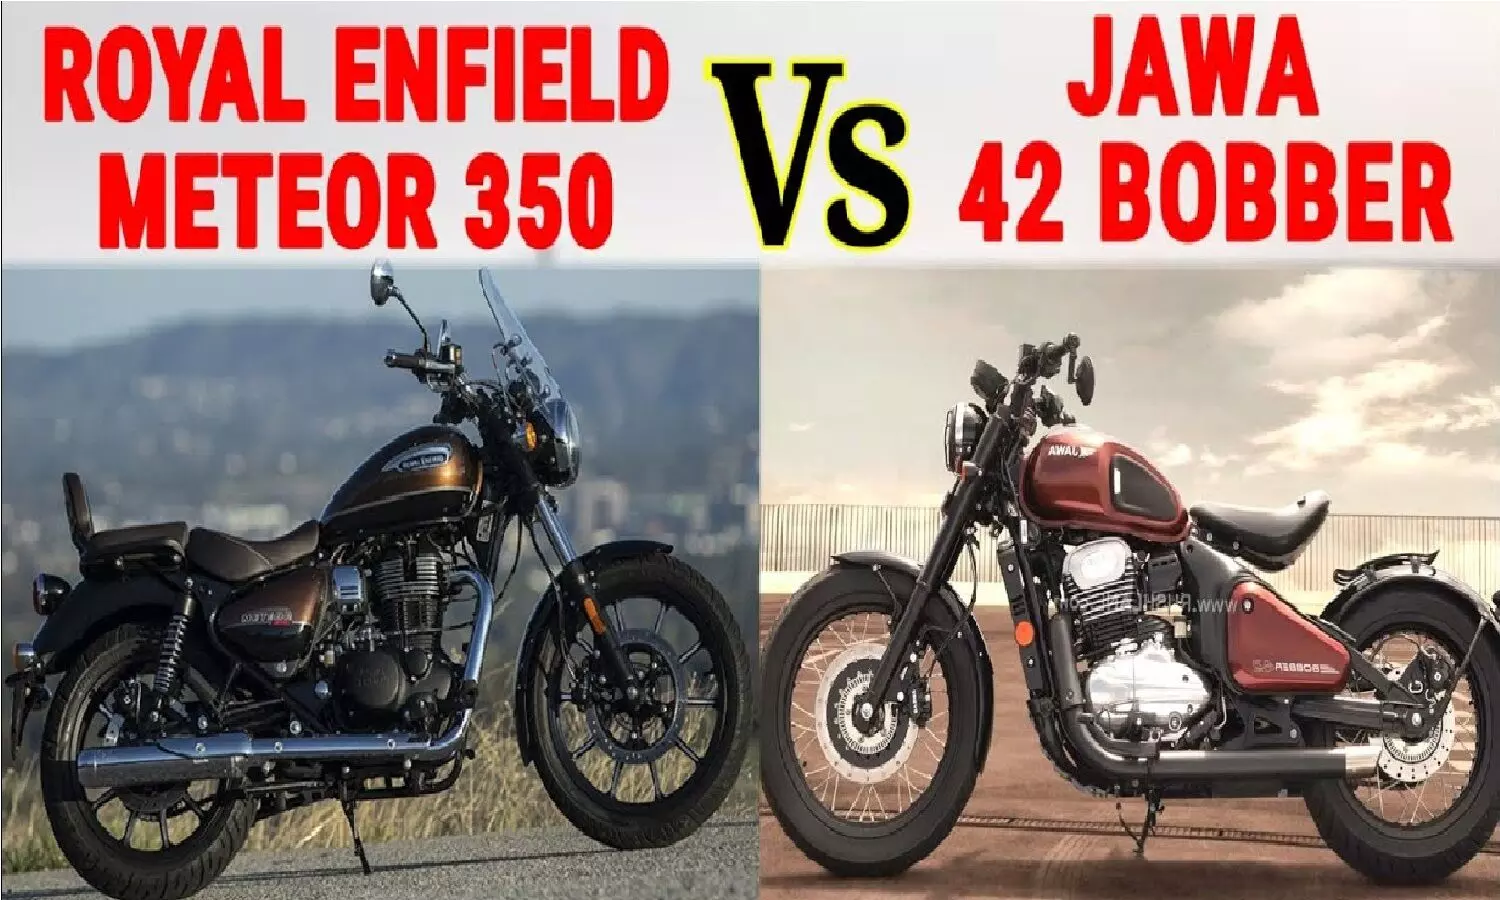 Jawa 42 Bobber Vs Meteor 350 In Hindi: कौन सी बाइक है बेस्ट